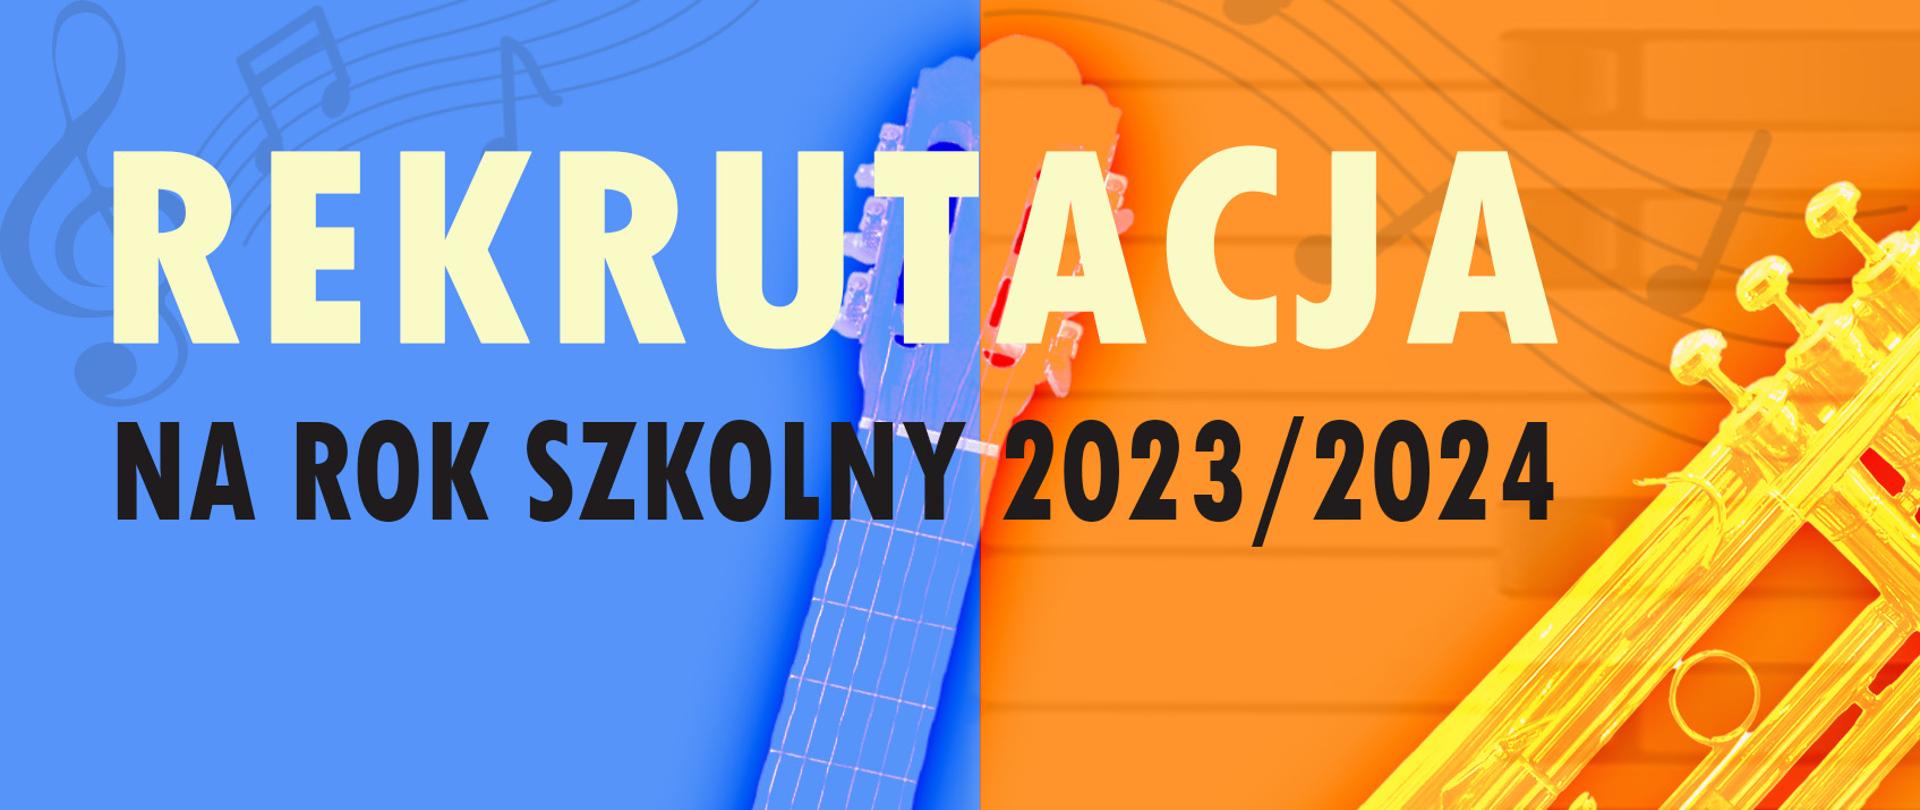 Rekrutacja na rok szkolny 2023/2024 na niebieskim i pomarańczowym tle. Fragmenty instrumentów: gitary i trąbki, szary klucz wiolinowy z nutami na pięciolini w tle.
